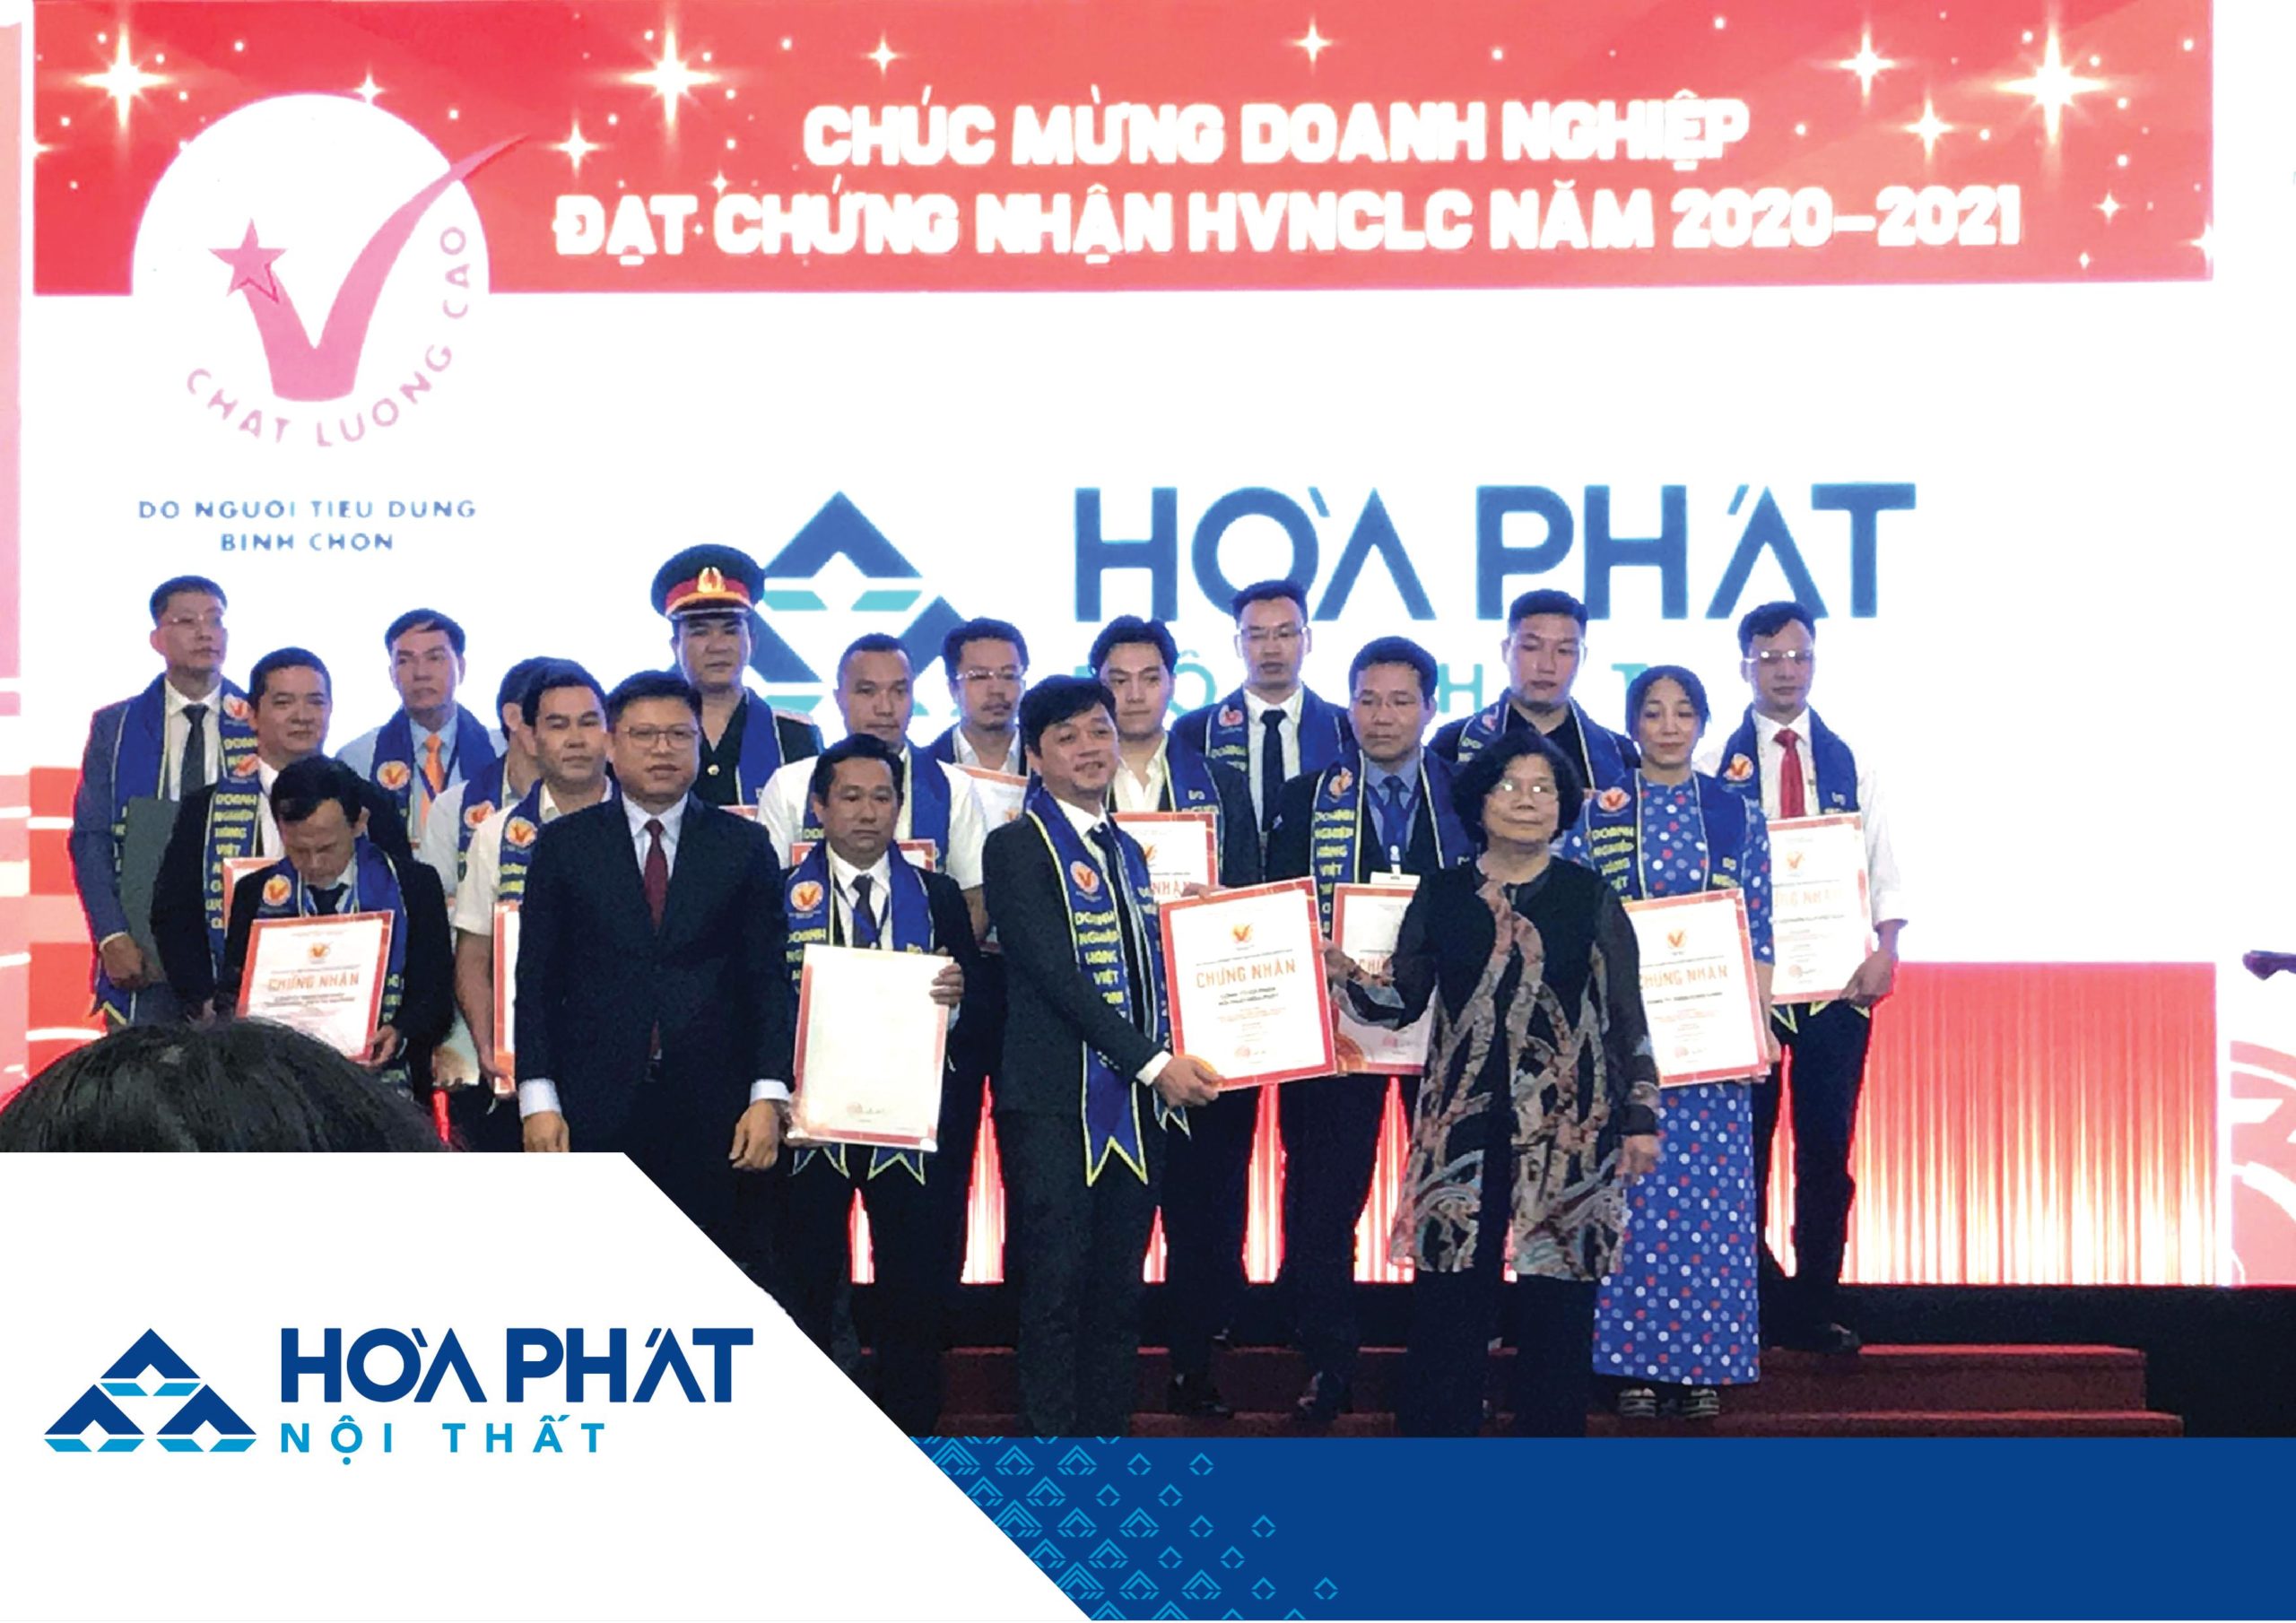 Nội thất Hòa Phát nhận danh hiệu Hàng Việt Nam Chất lượng cao 2020 – 2021